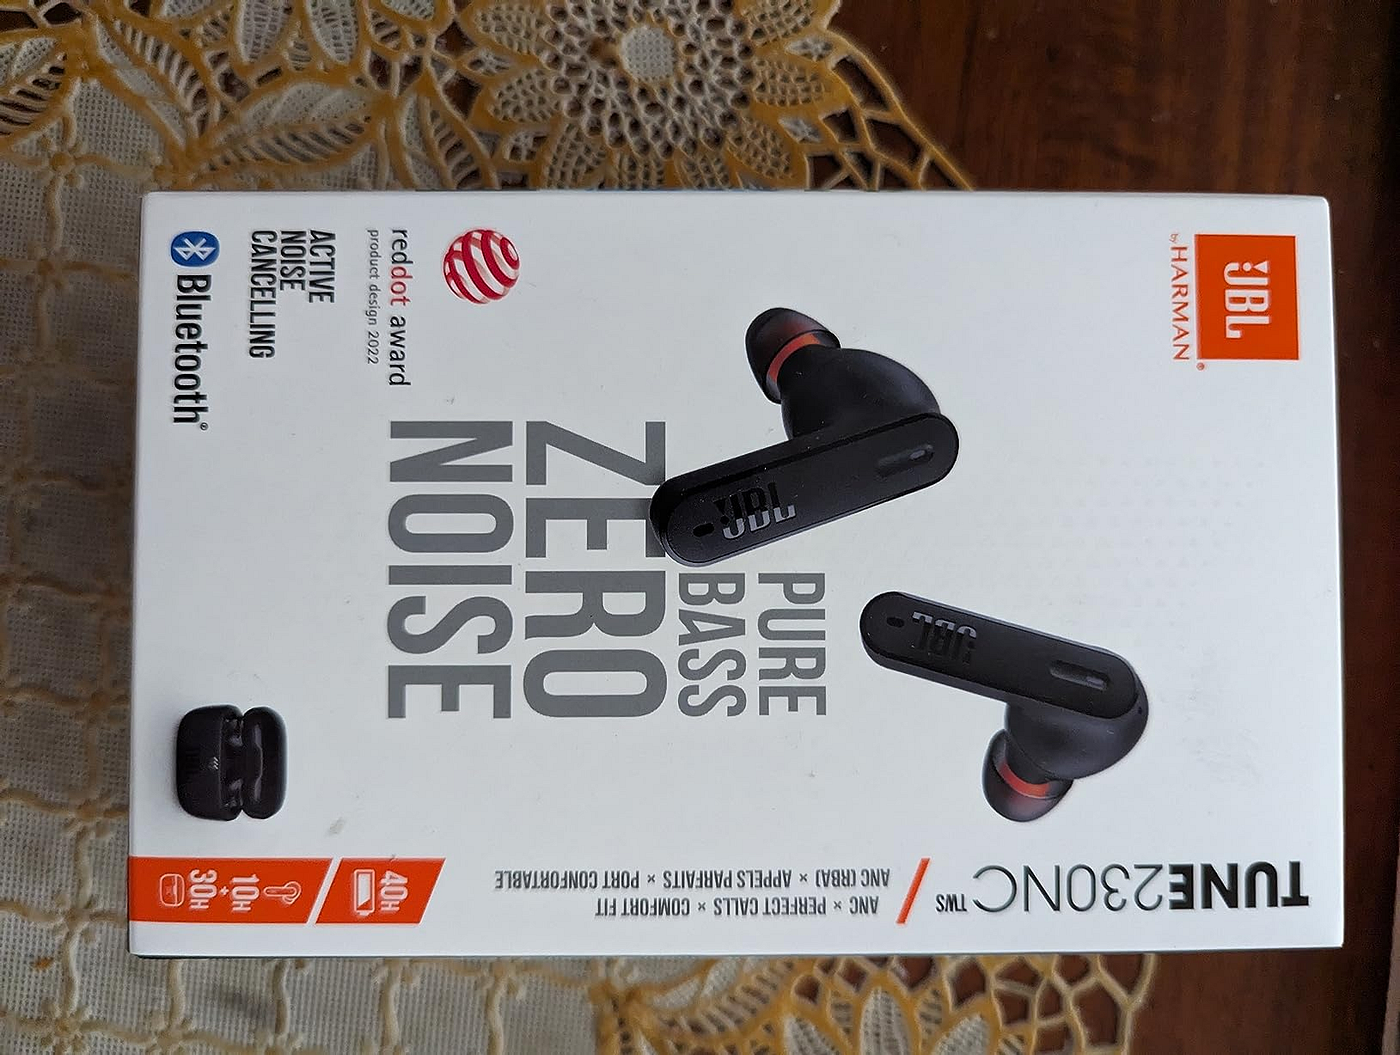 JBL Tune 230NC Noise-Canceling True Wireless In-Ear Headphones -White